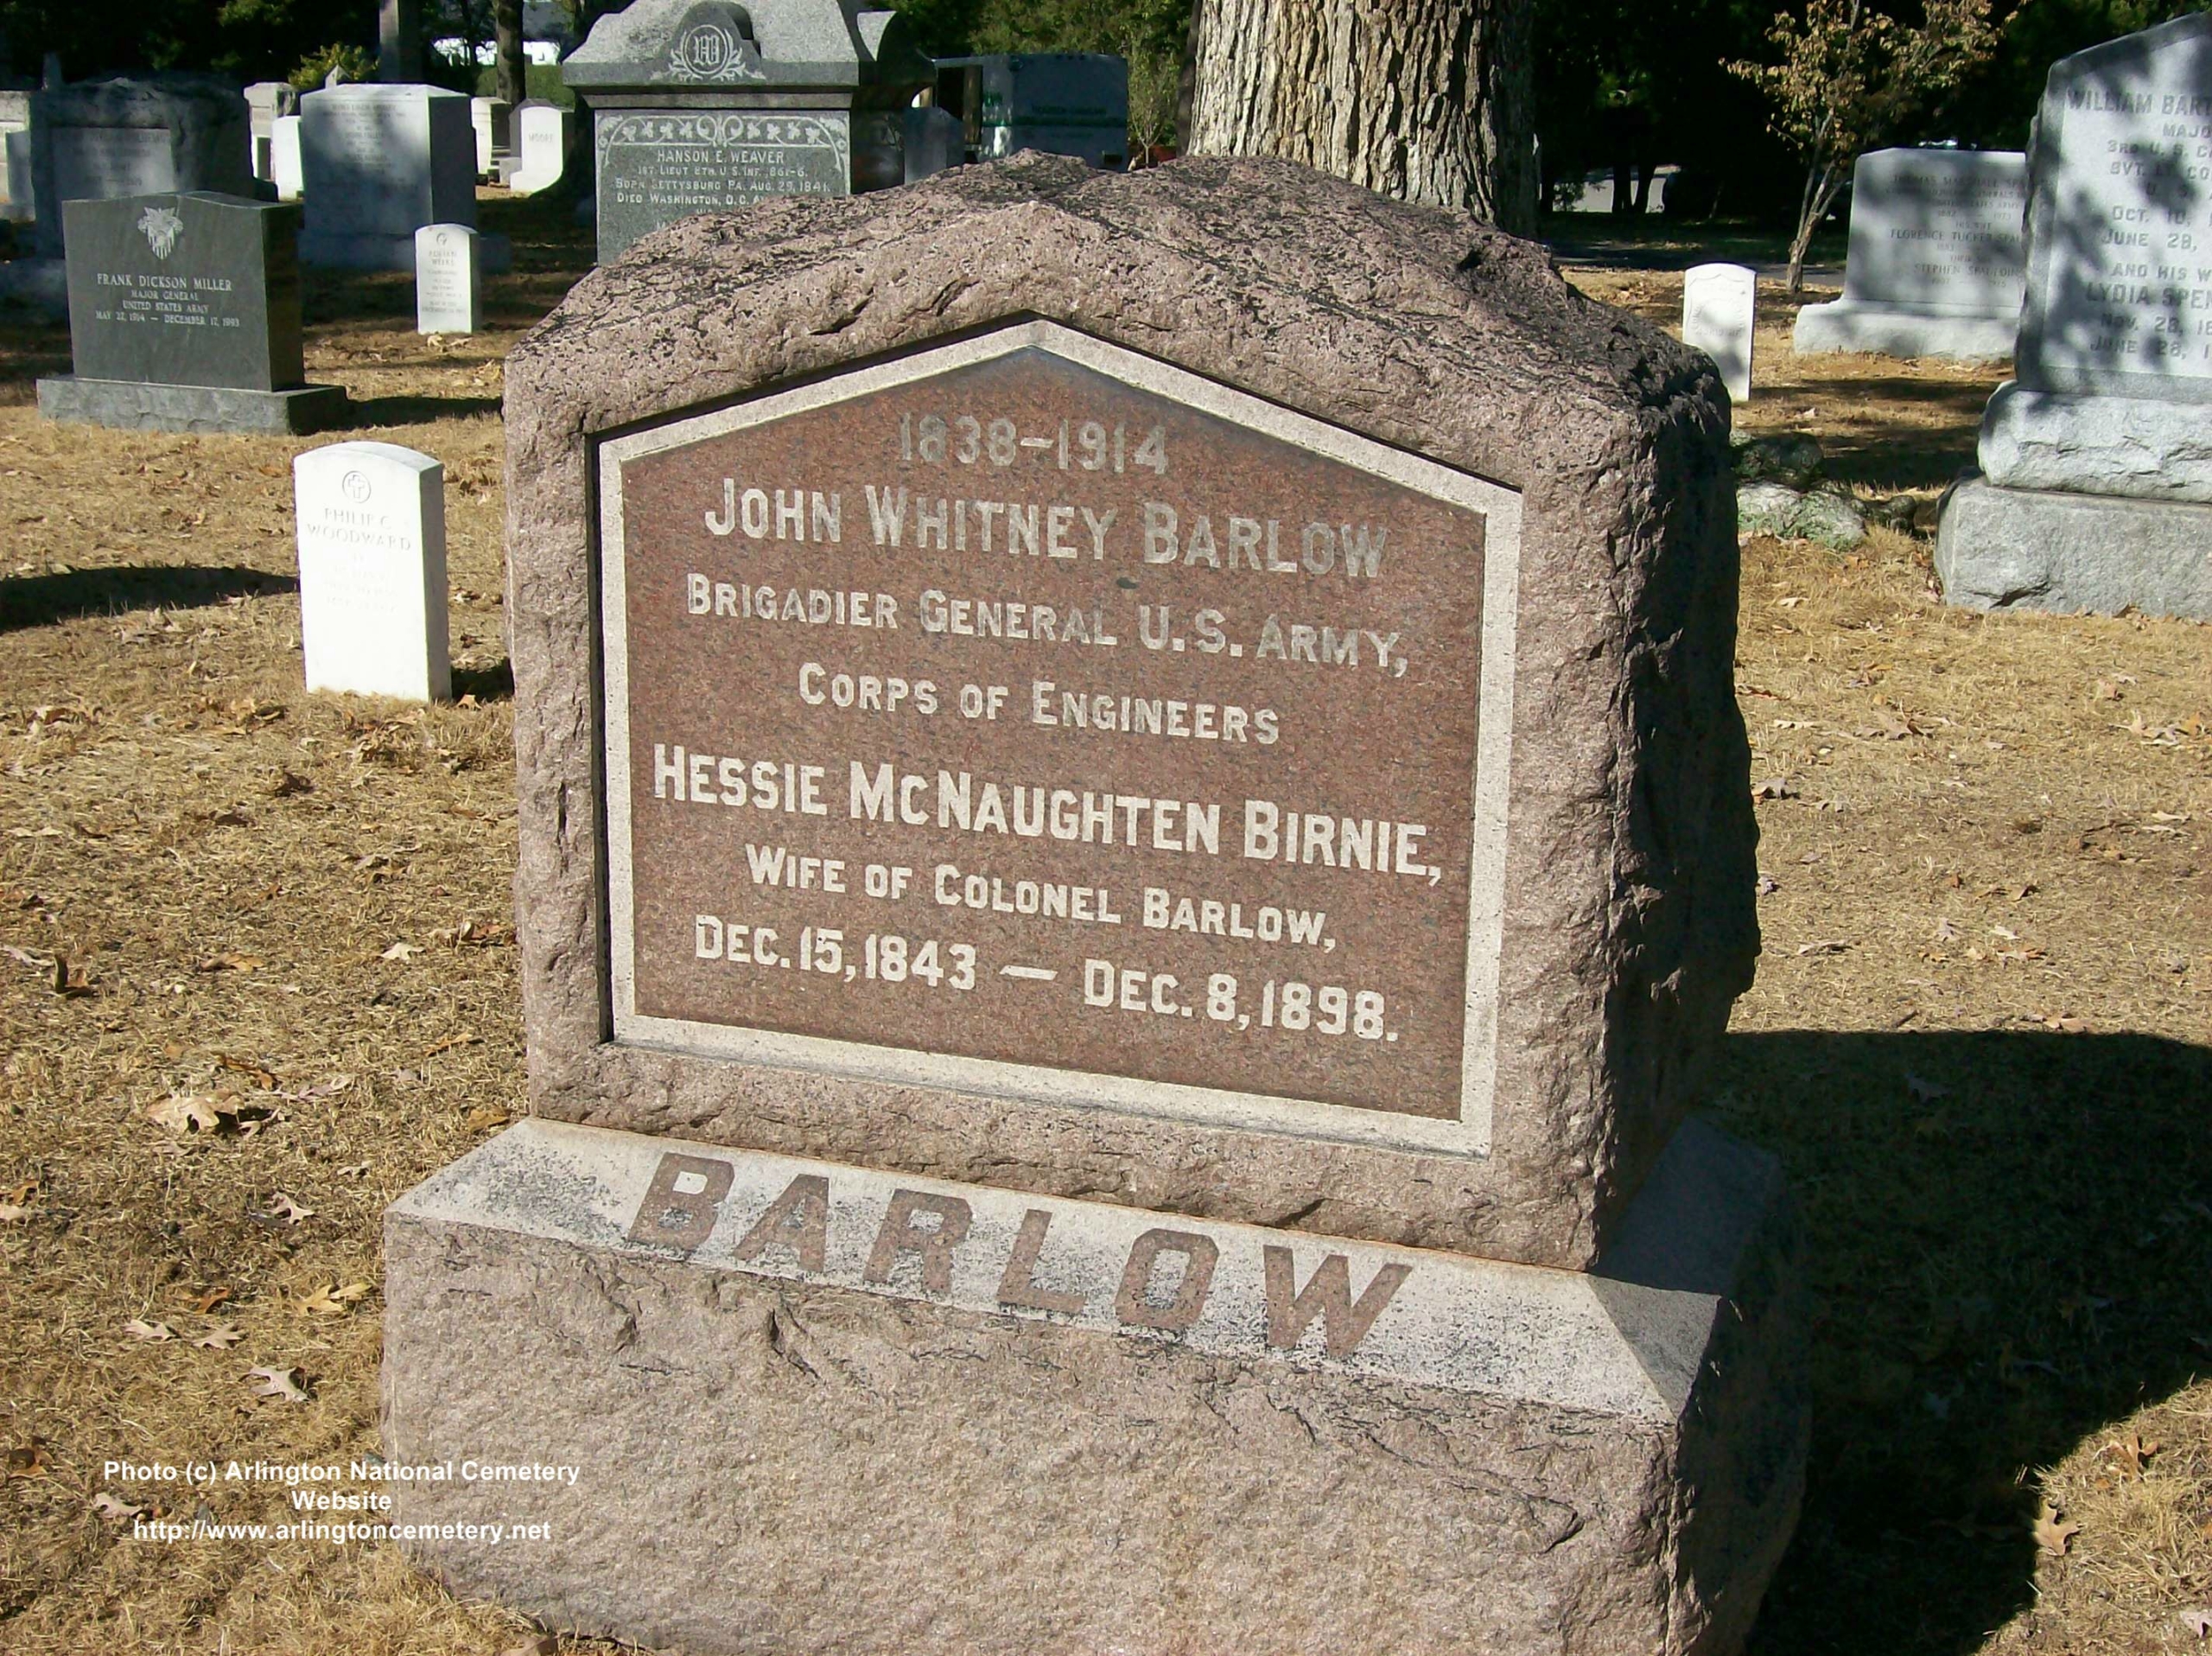 jwbarlow-gravesite-photo-october-2007-001